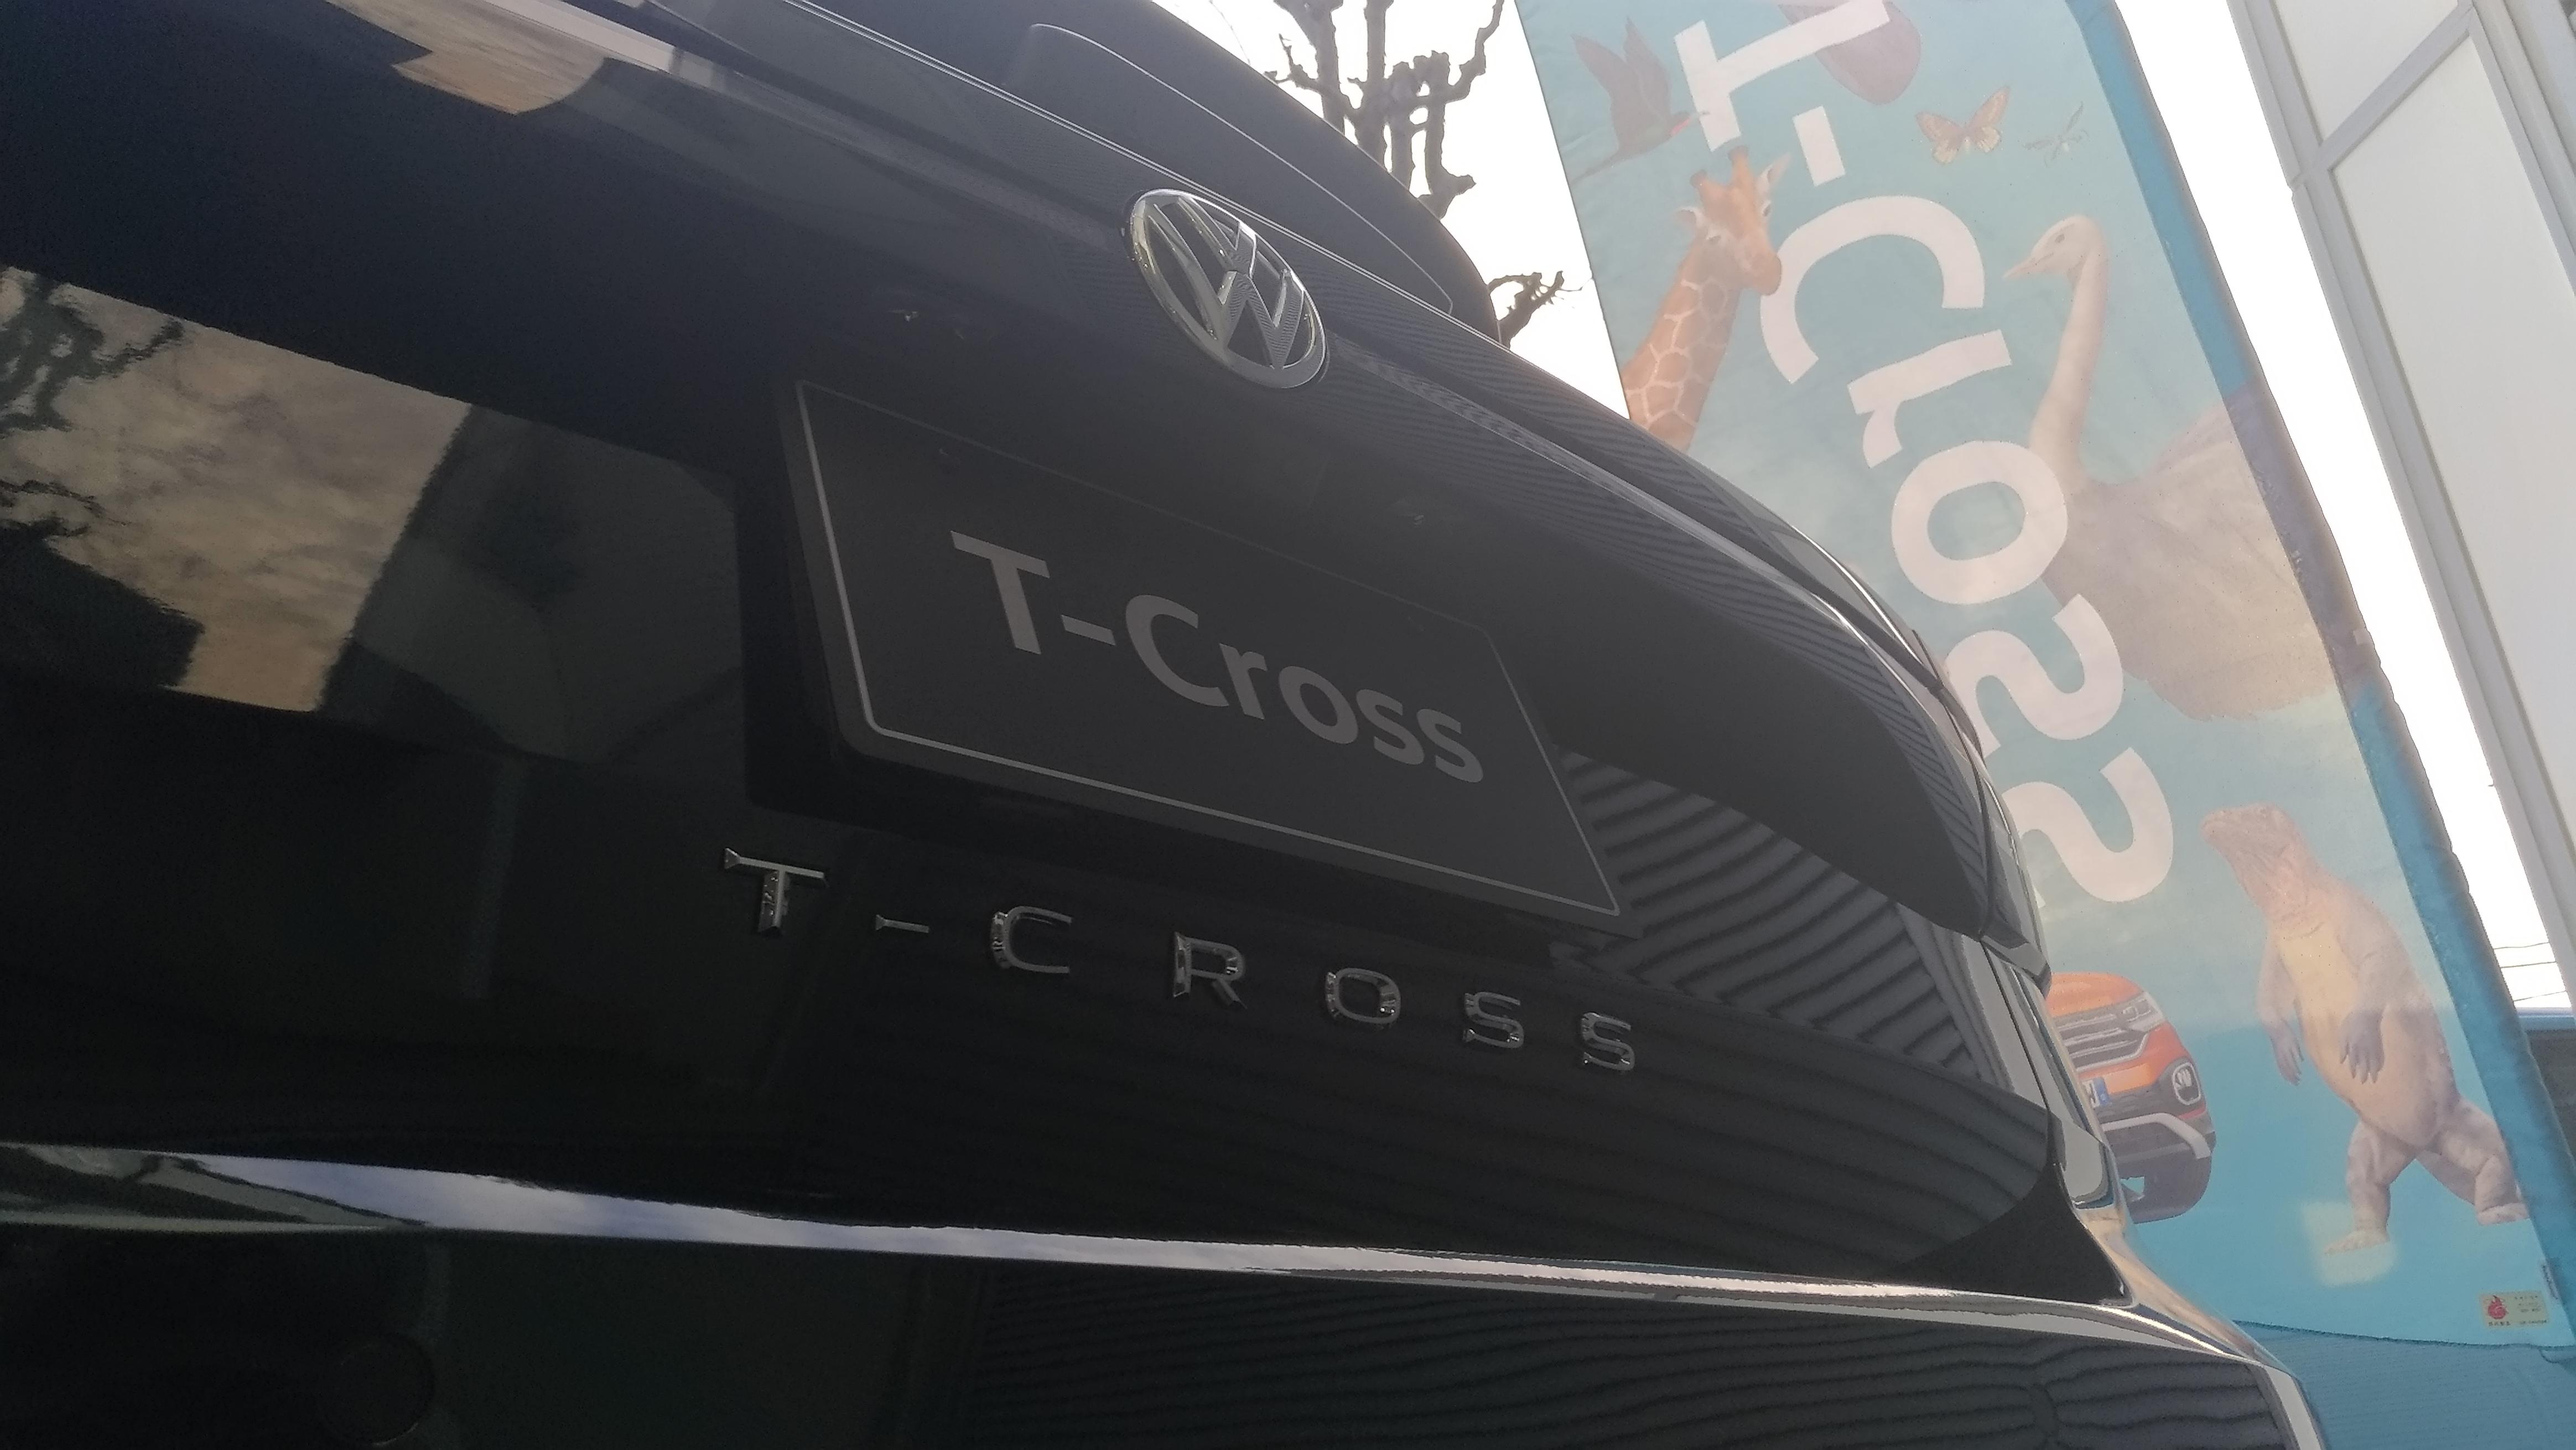 T-cross3.jpg